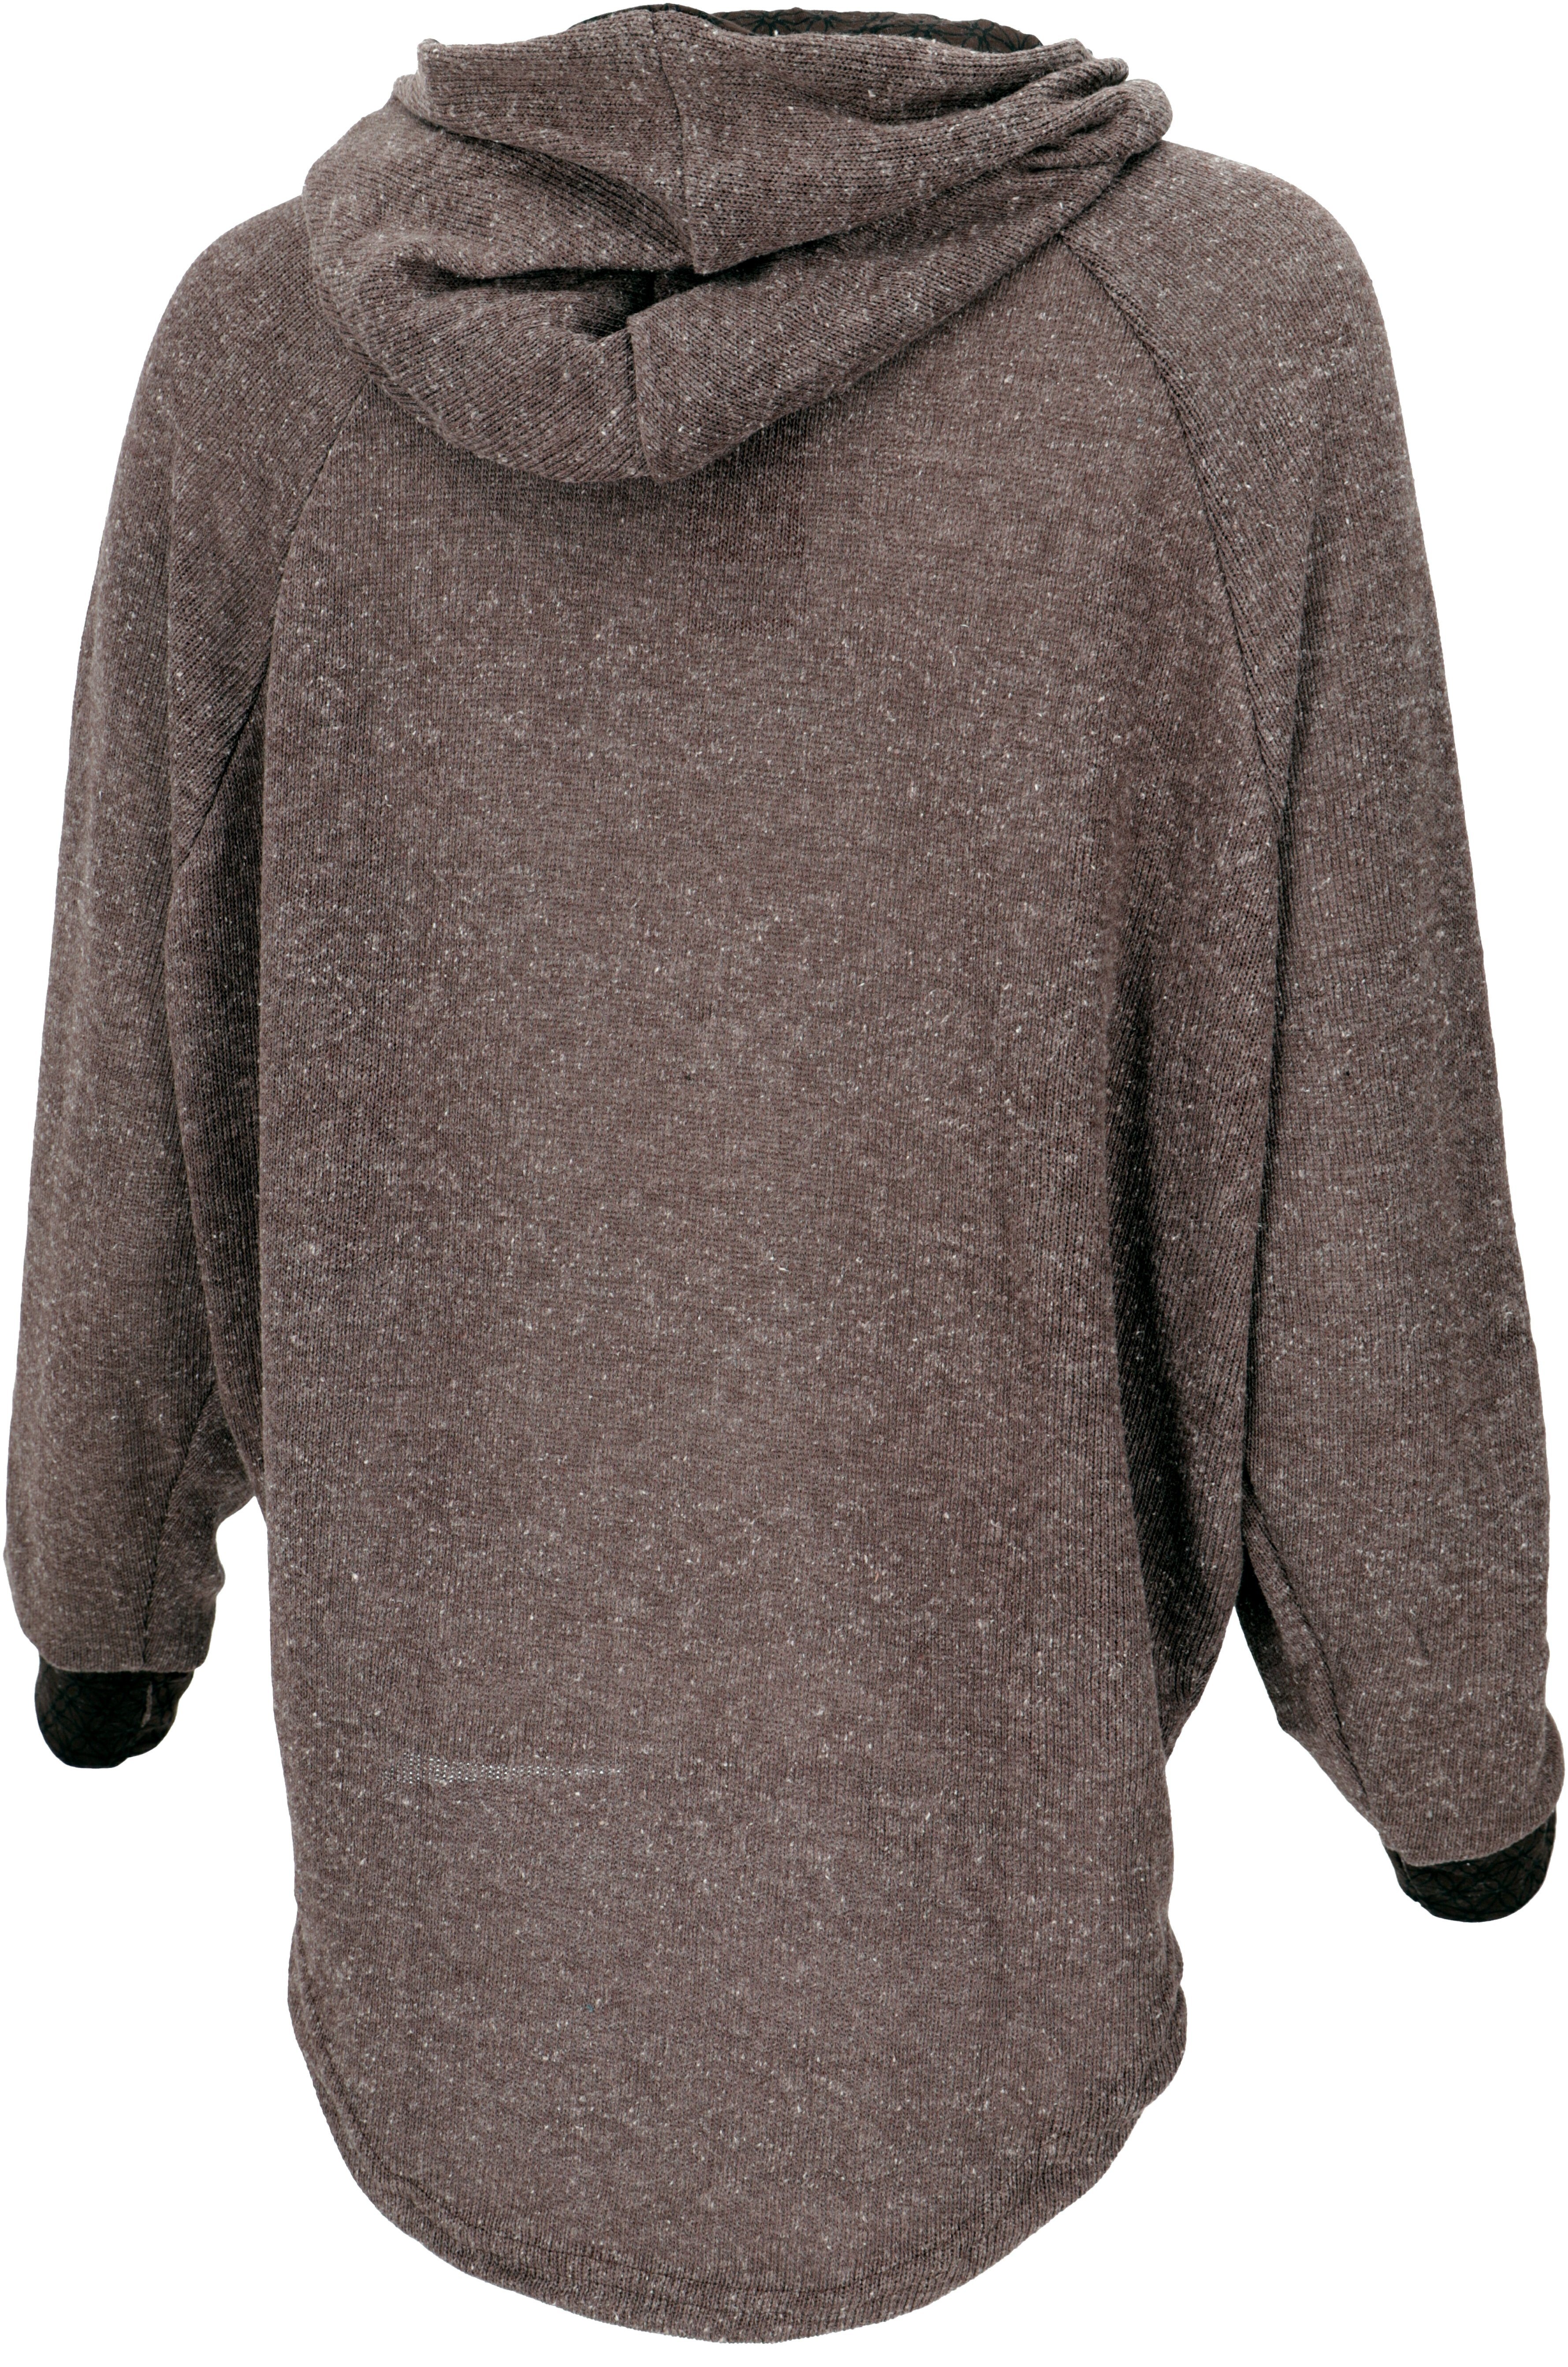 Pullover, Guru-Shop braun Hoody, -.. Bekleidung Sweatshirt, alternative Kapuzenpullover Longsleeve